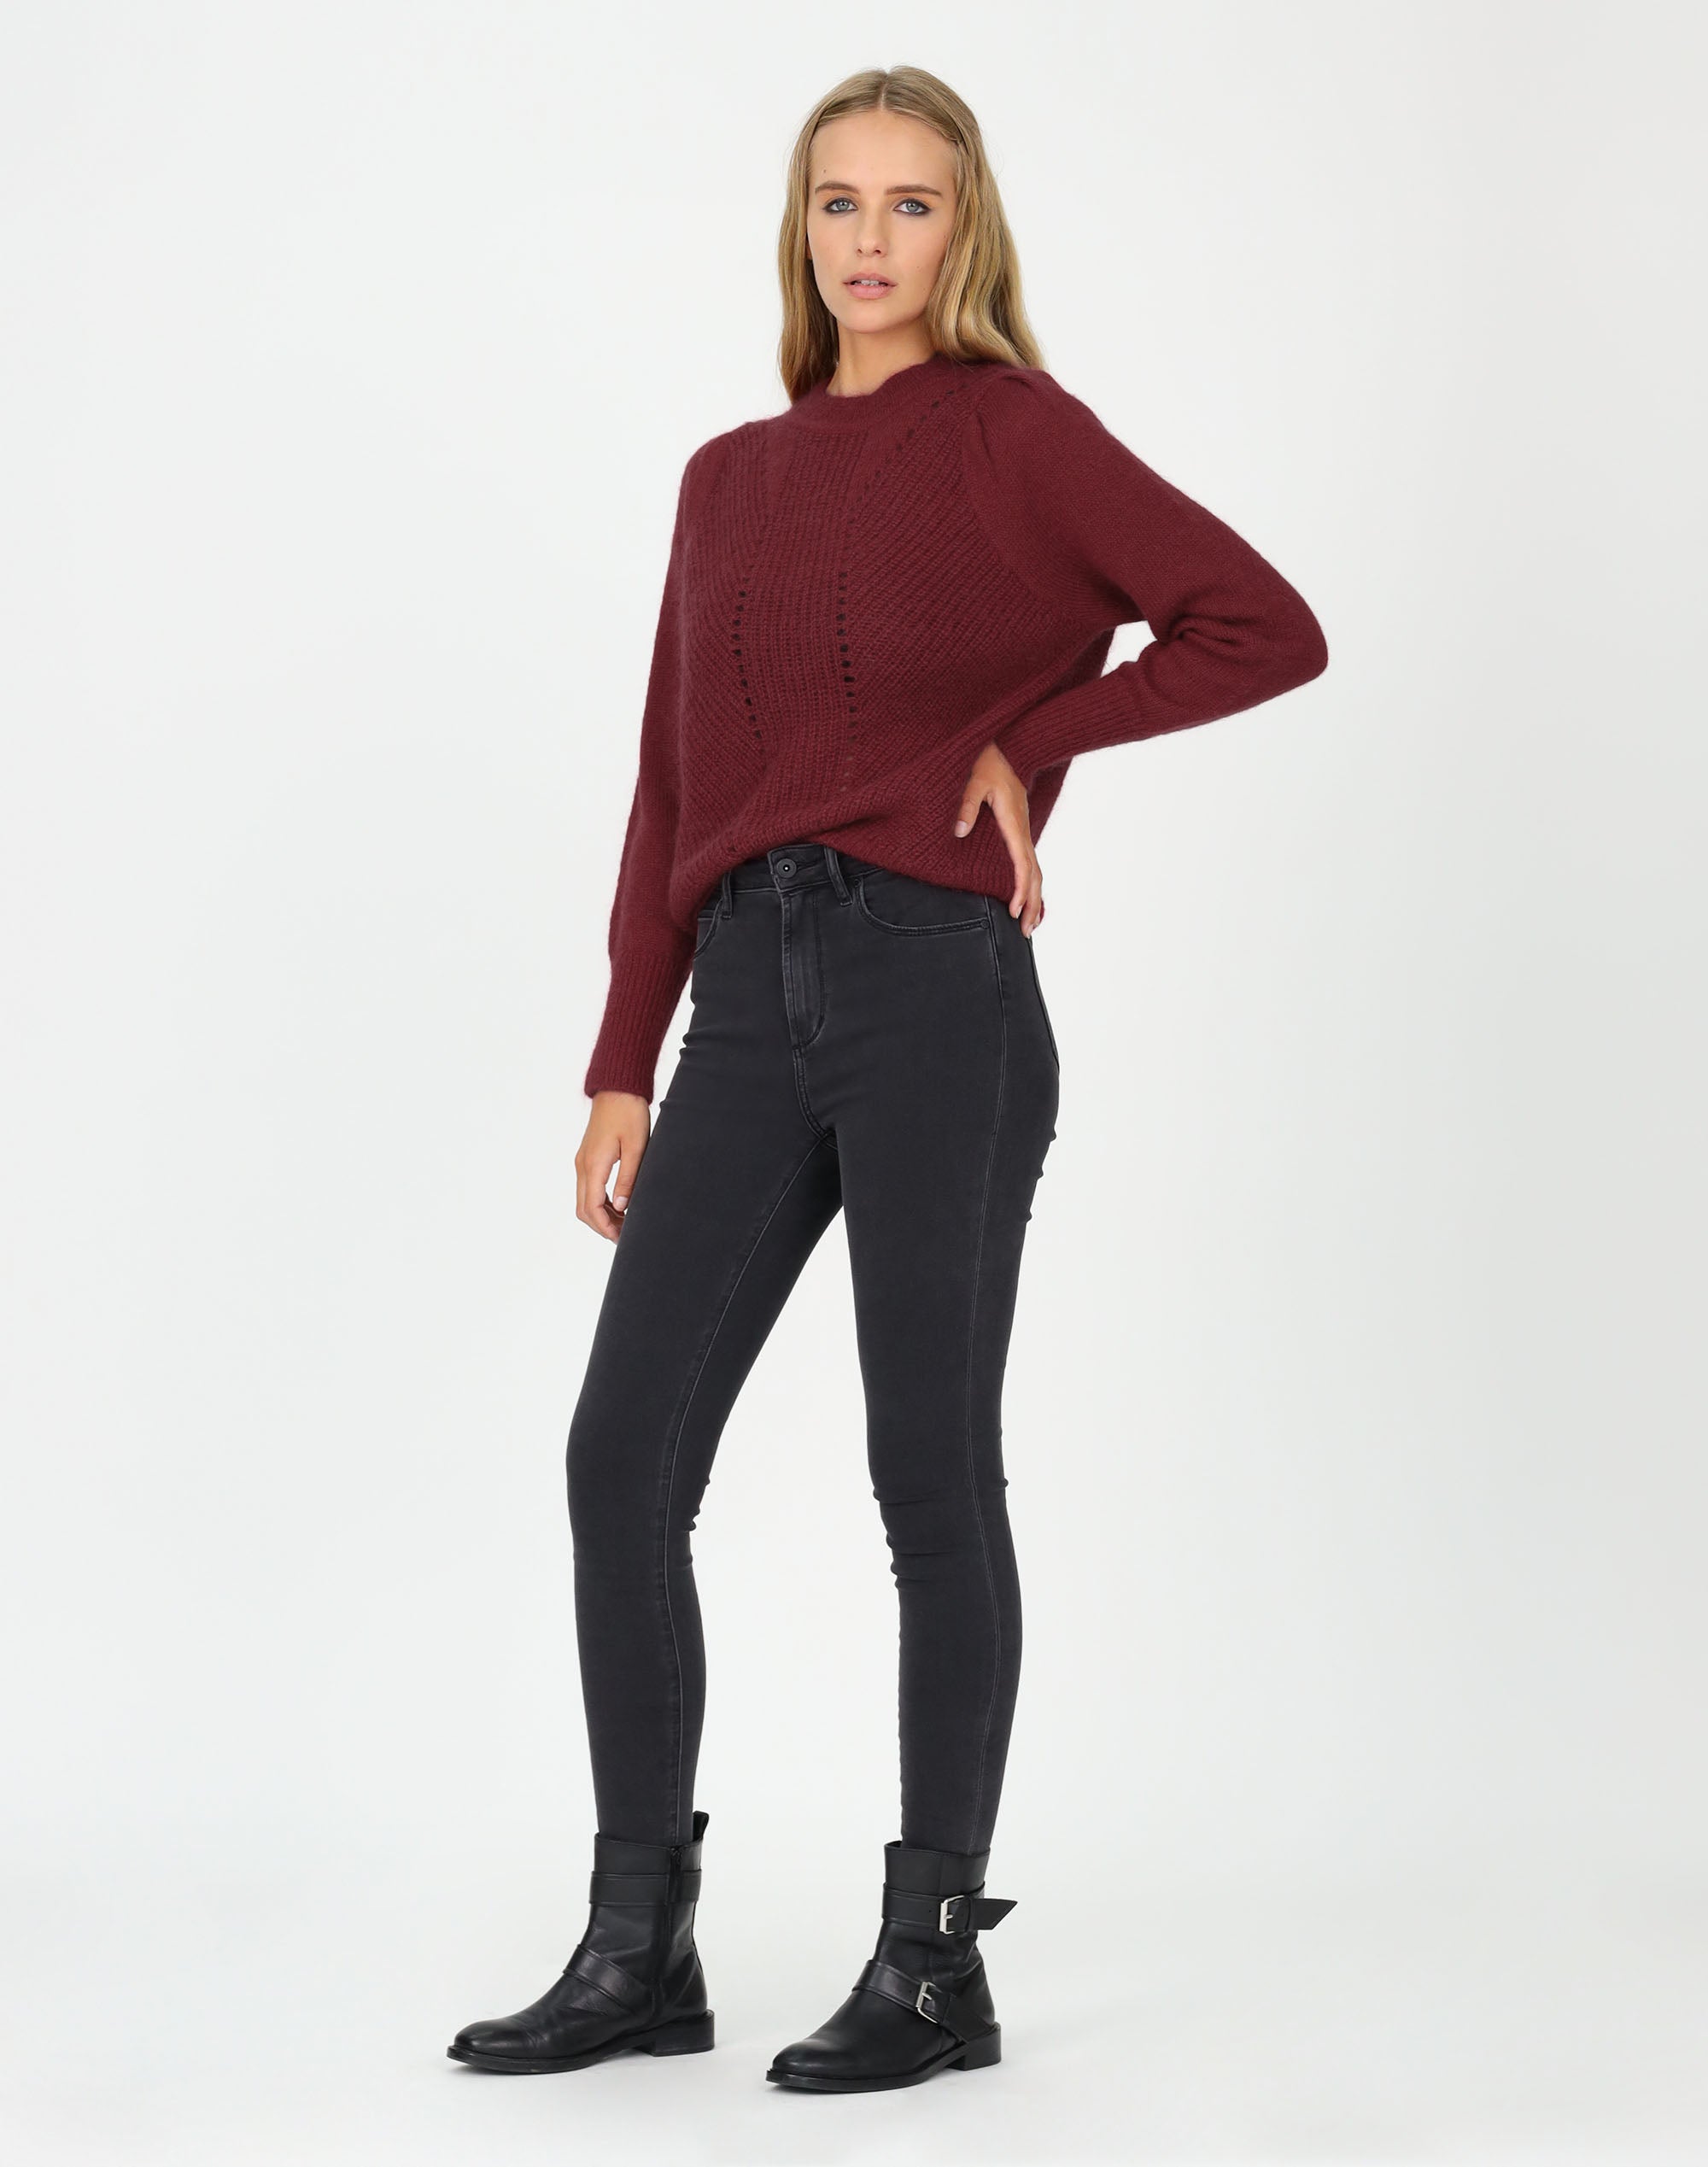 Jewel Sweater